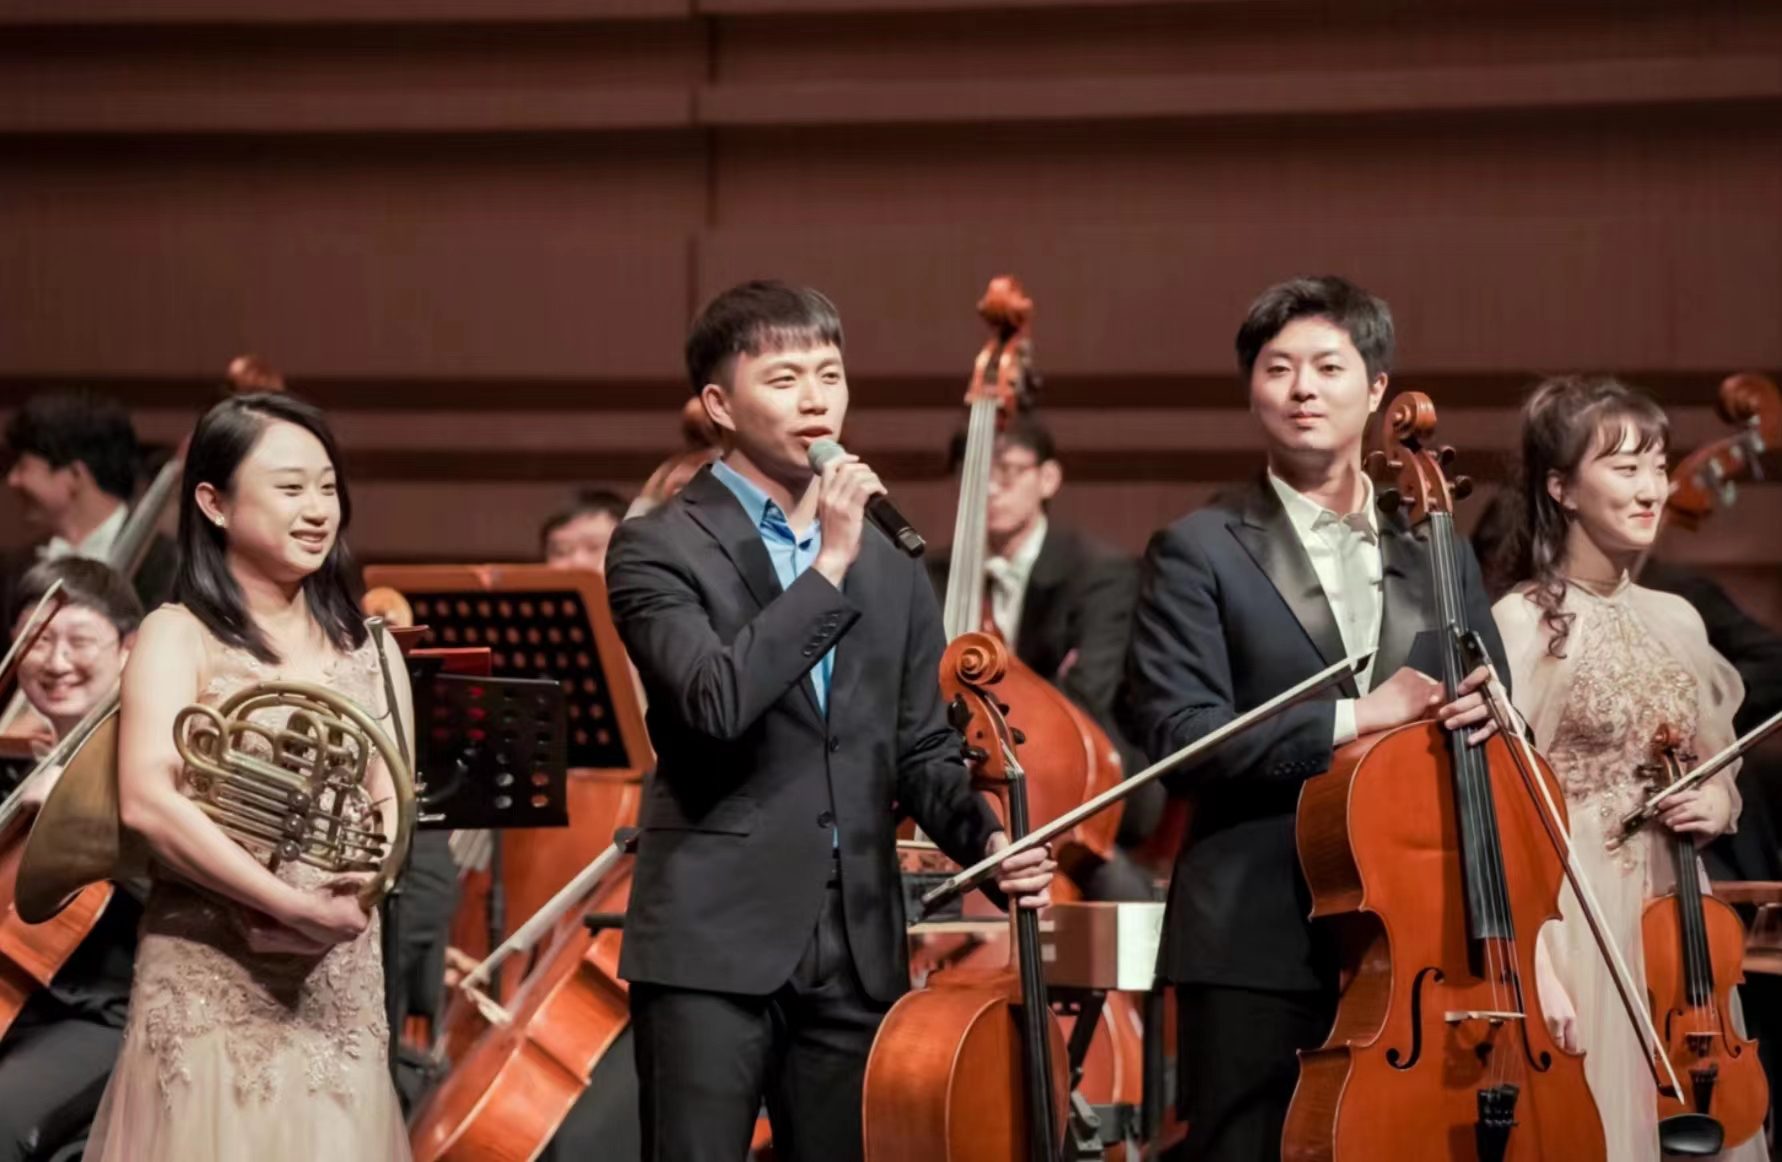 “两岸一家亲”的美好旋律奏响在宁波交响乐团